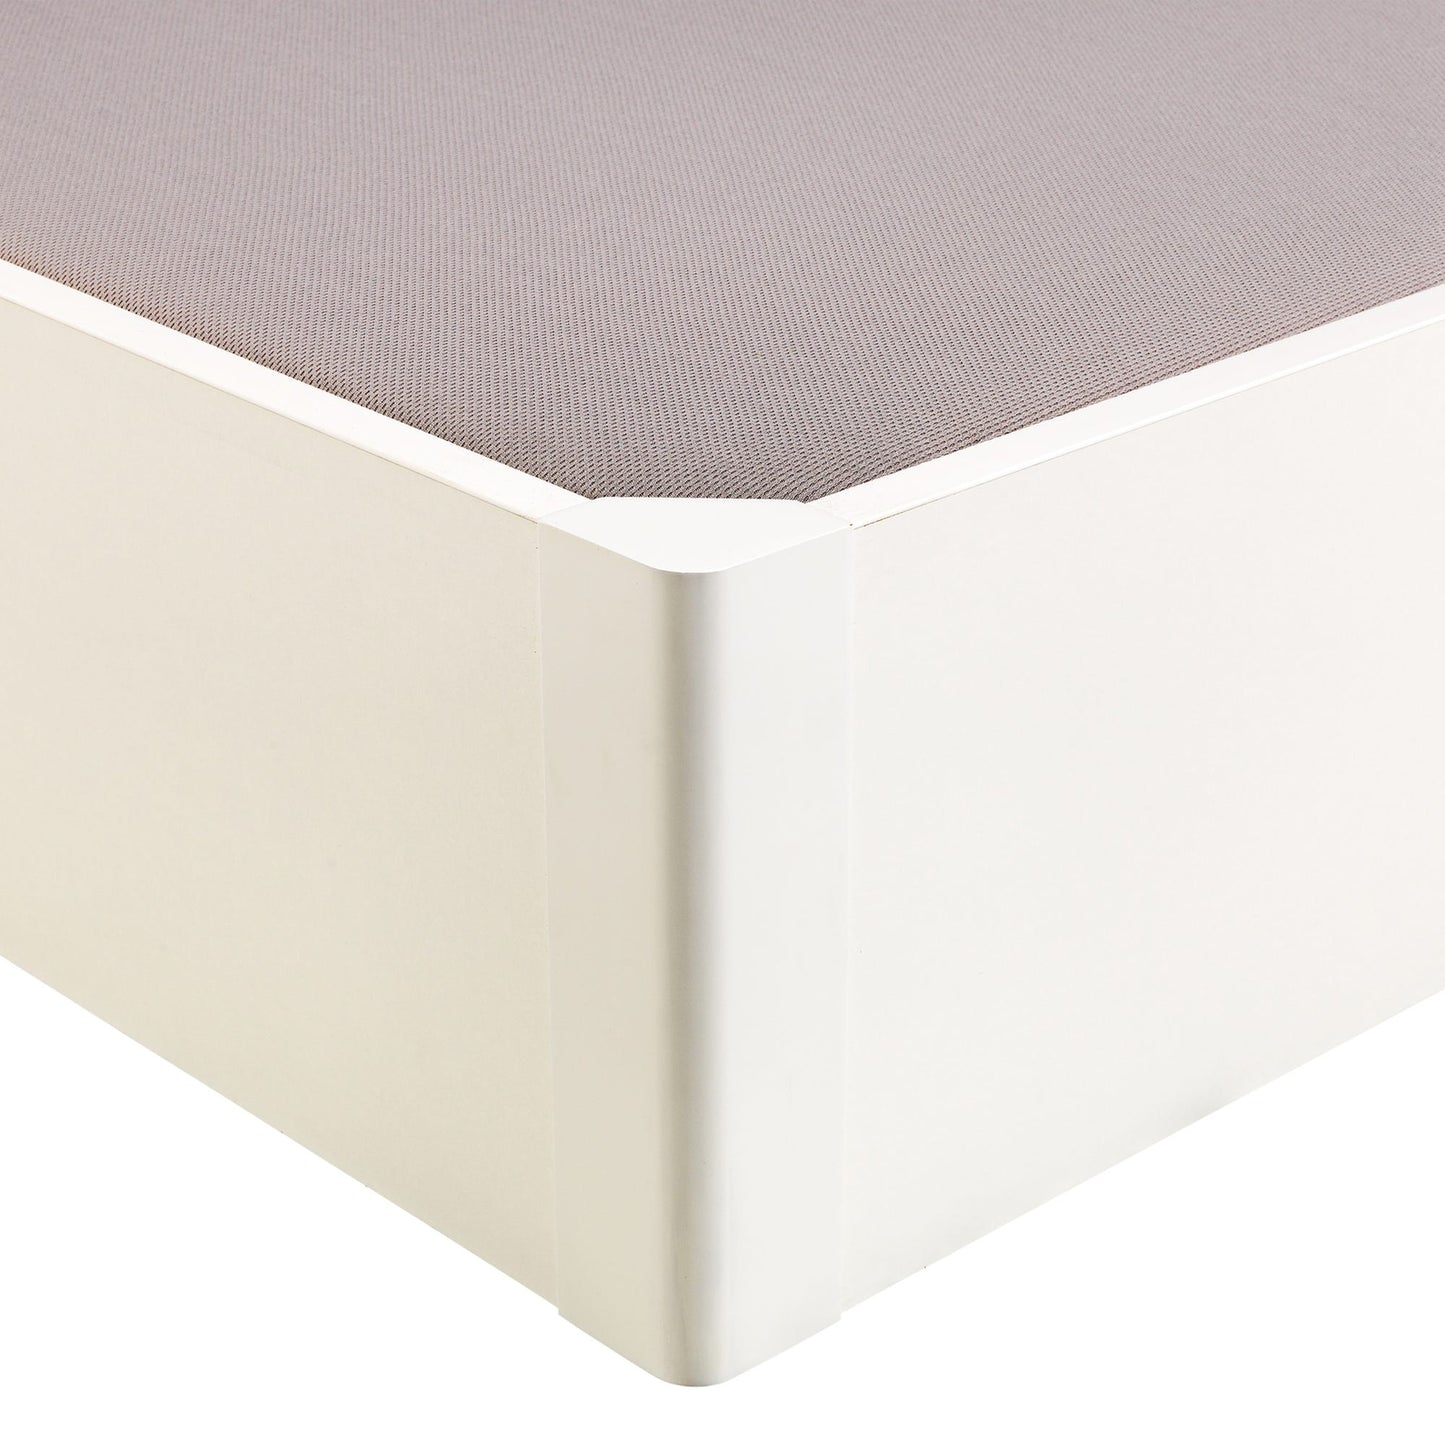 Canapé abatible de madera tapa única de color blanco - DESIGN - 105x210